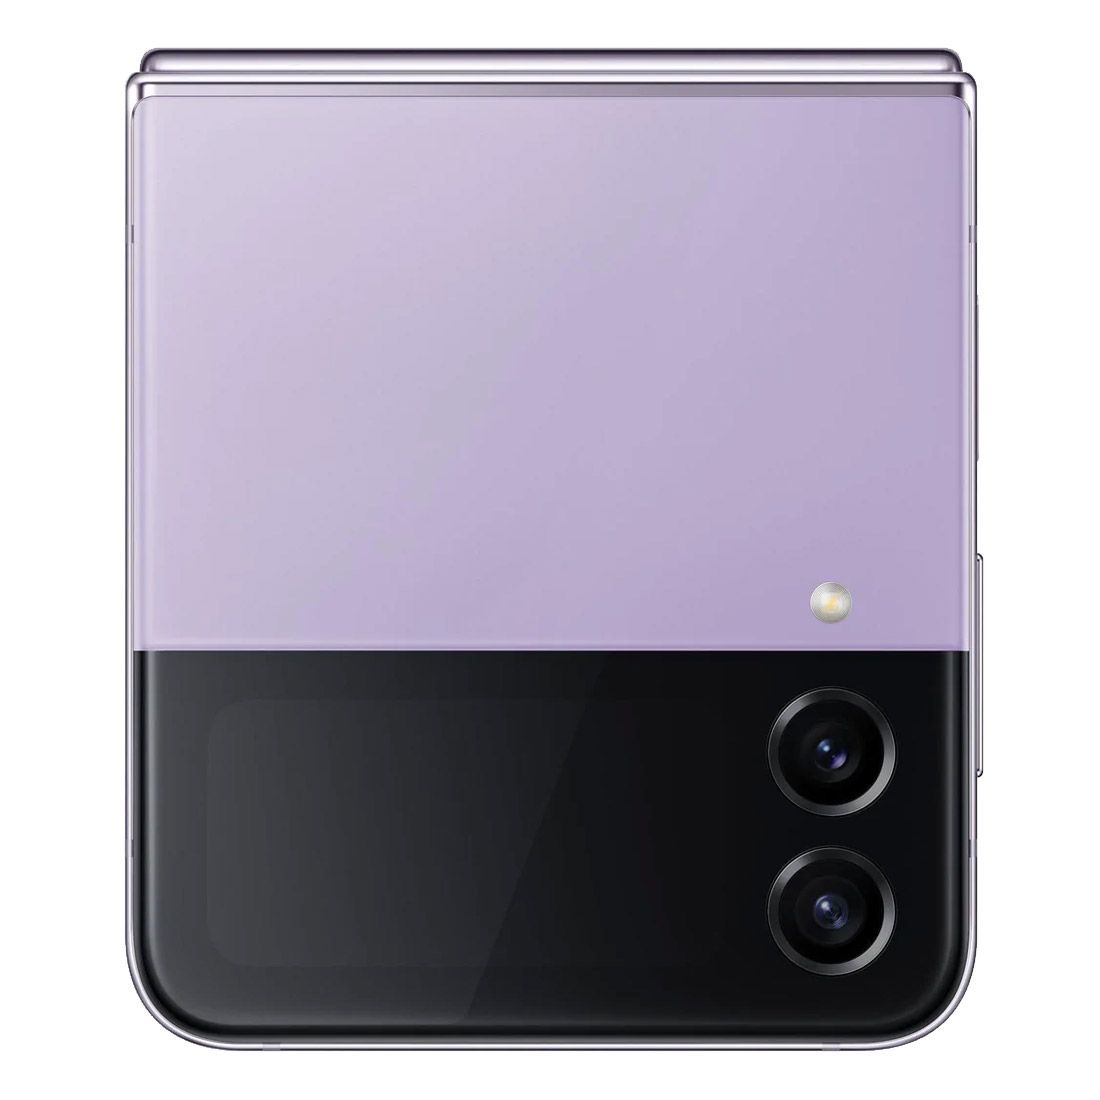 Samsung Galaxy Z Flip4 5G 512GB + 8GB - Bora Purple